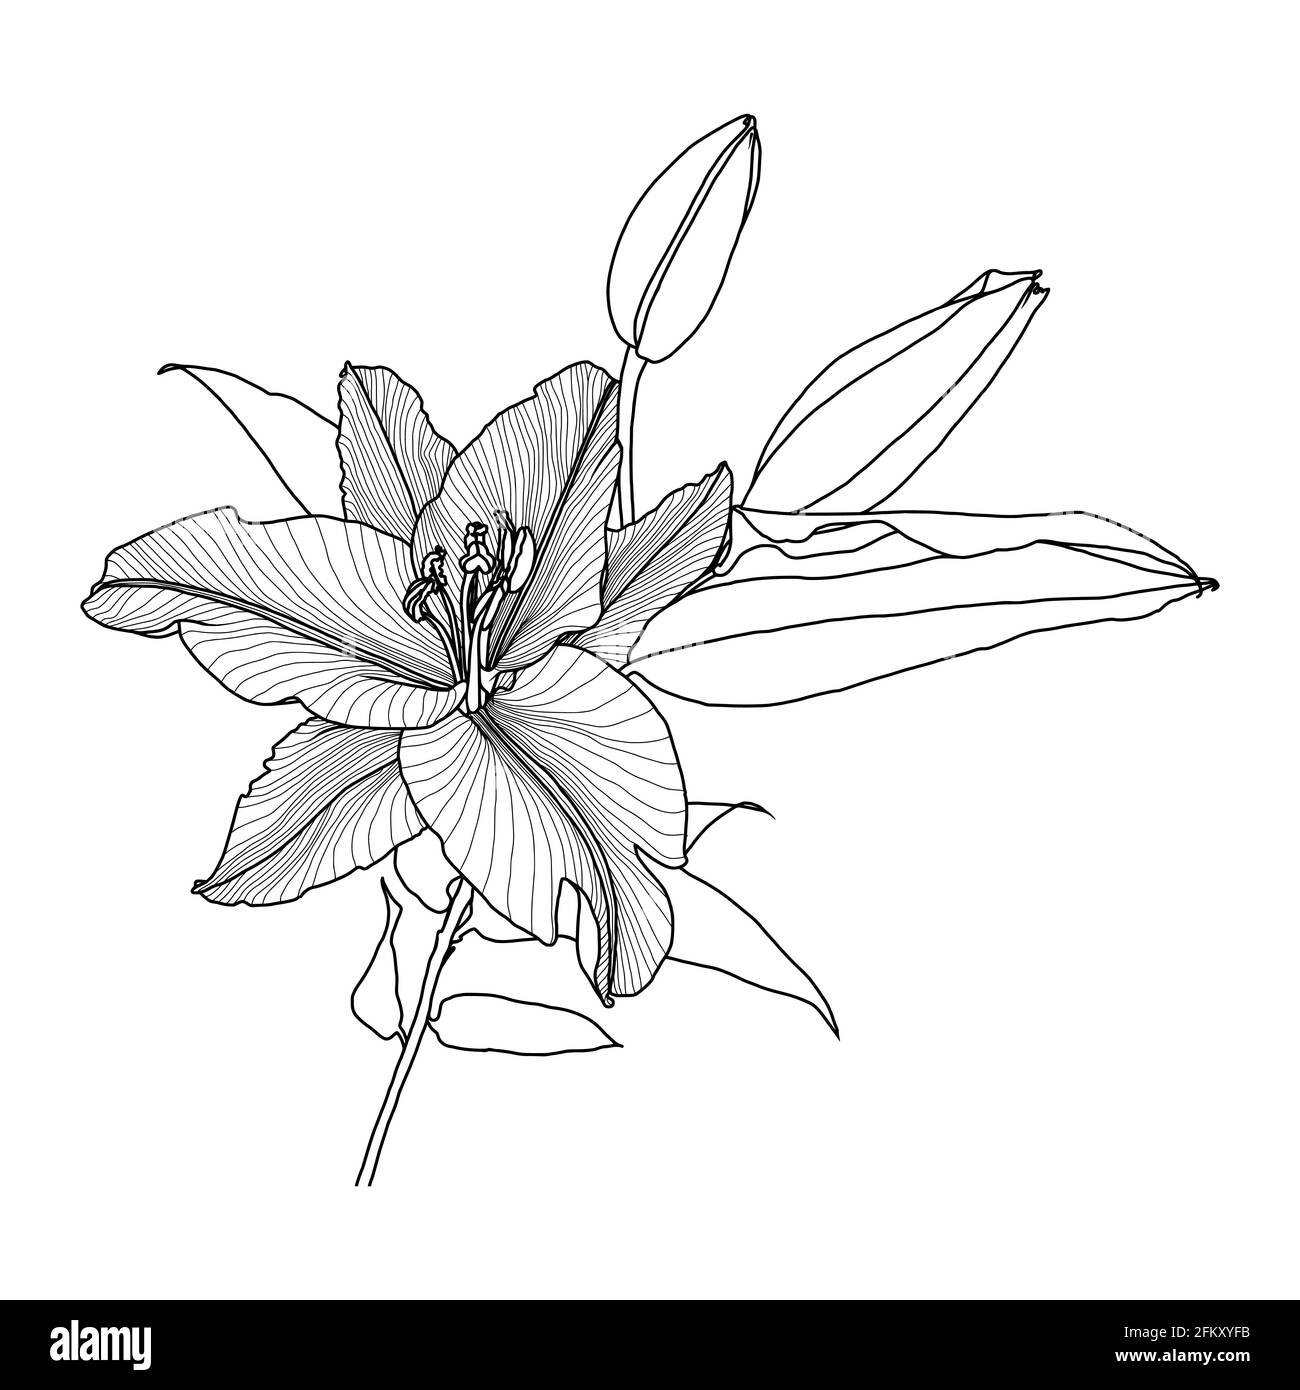 Dessin linéaire réaliste de fleur lilly avec feuilles et bourgeons, graphiques noirs sur fond blanc, élément moderne d'art numérique pour le design. Illustration de Vecteur